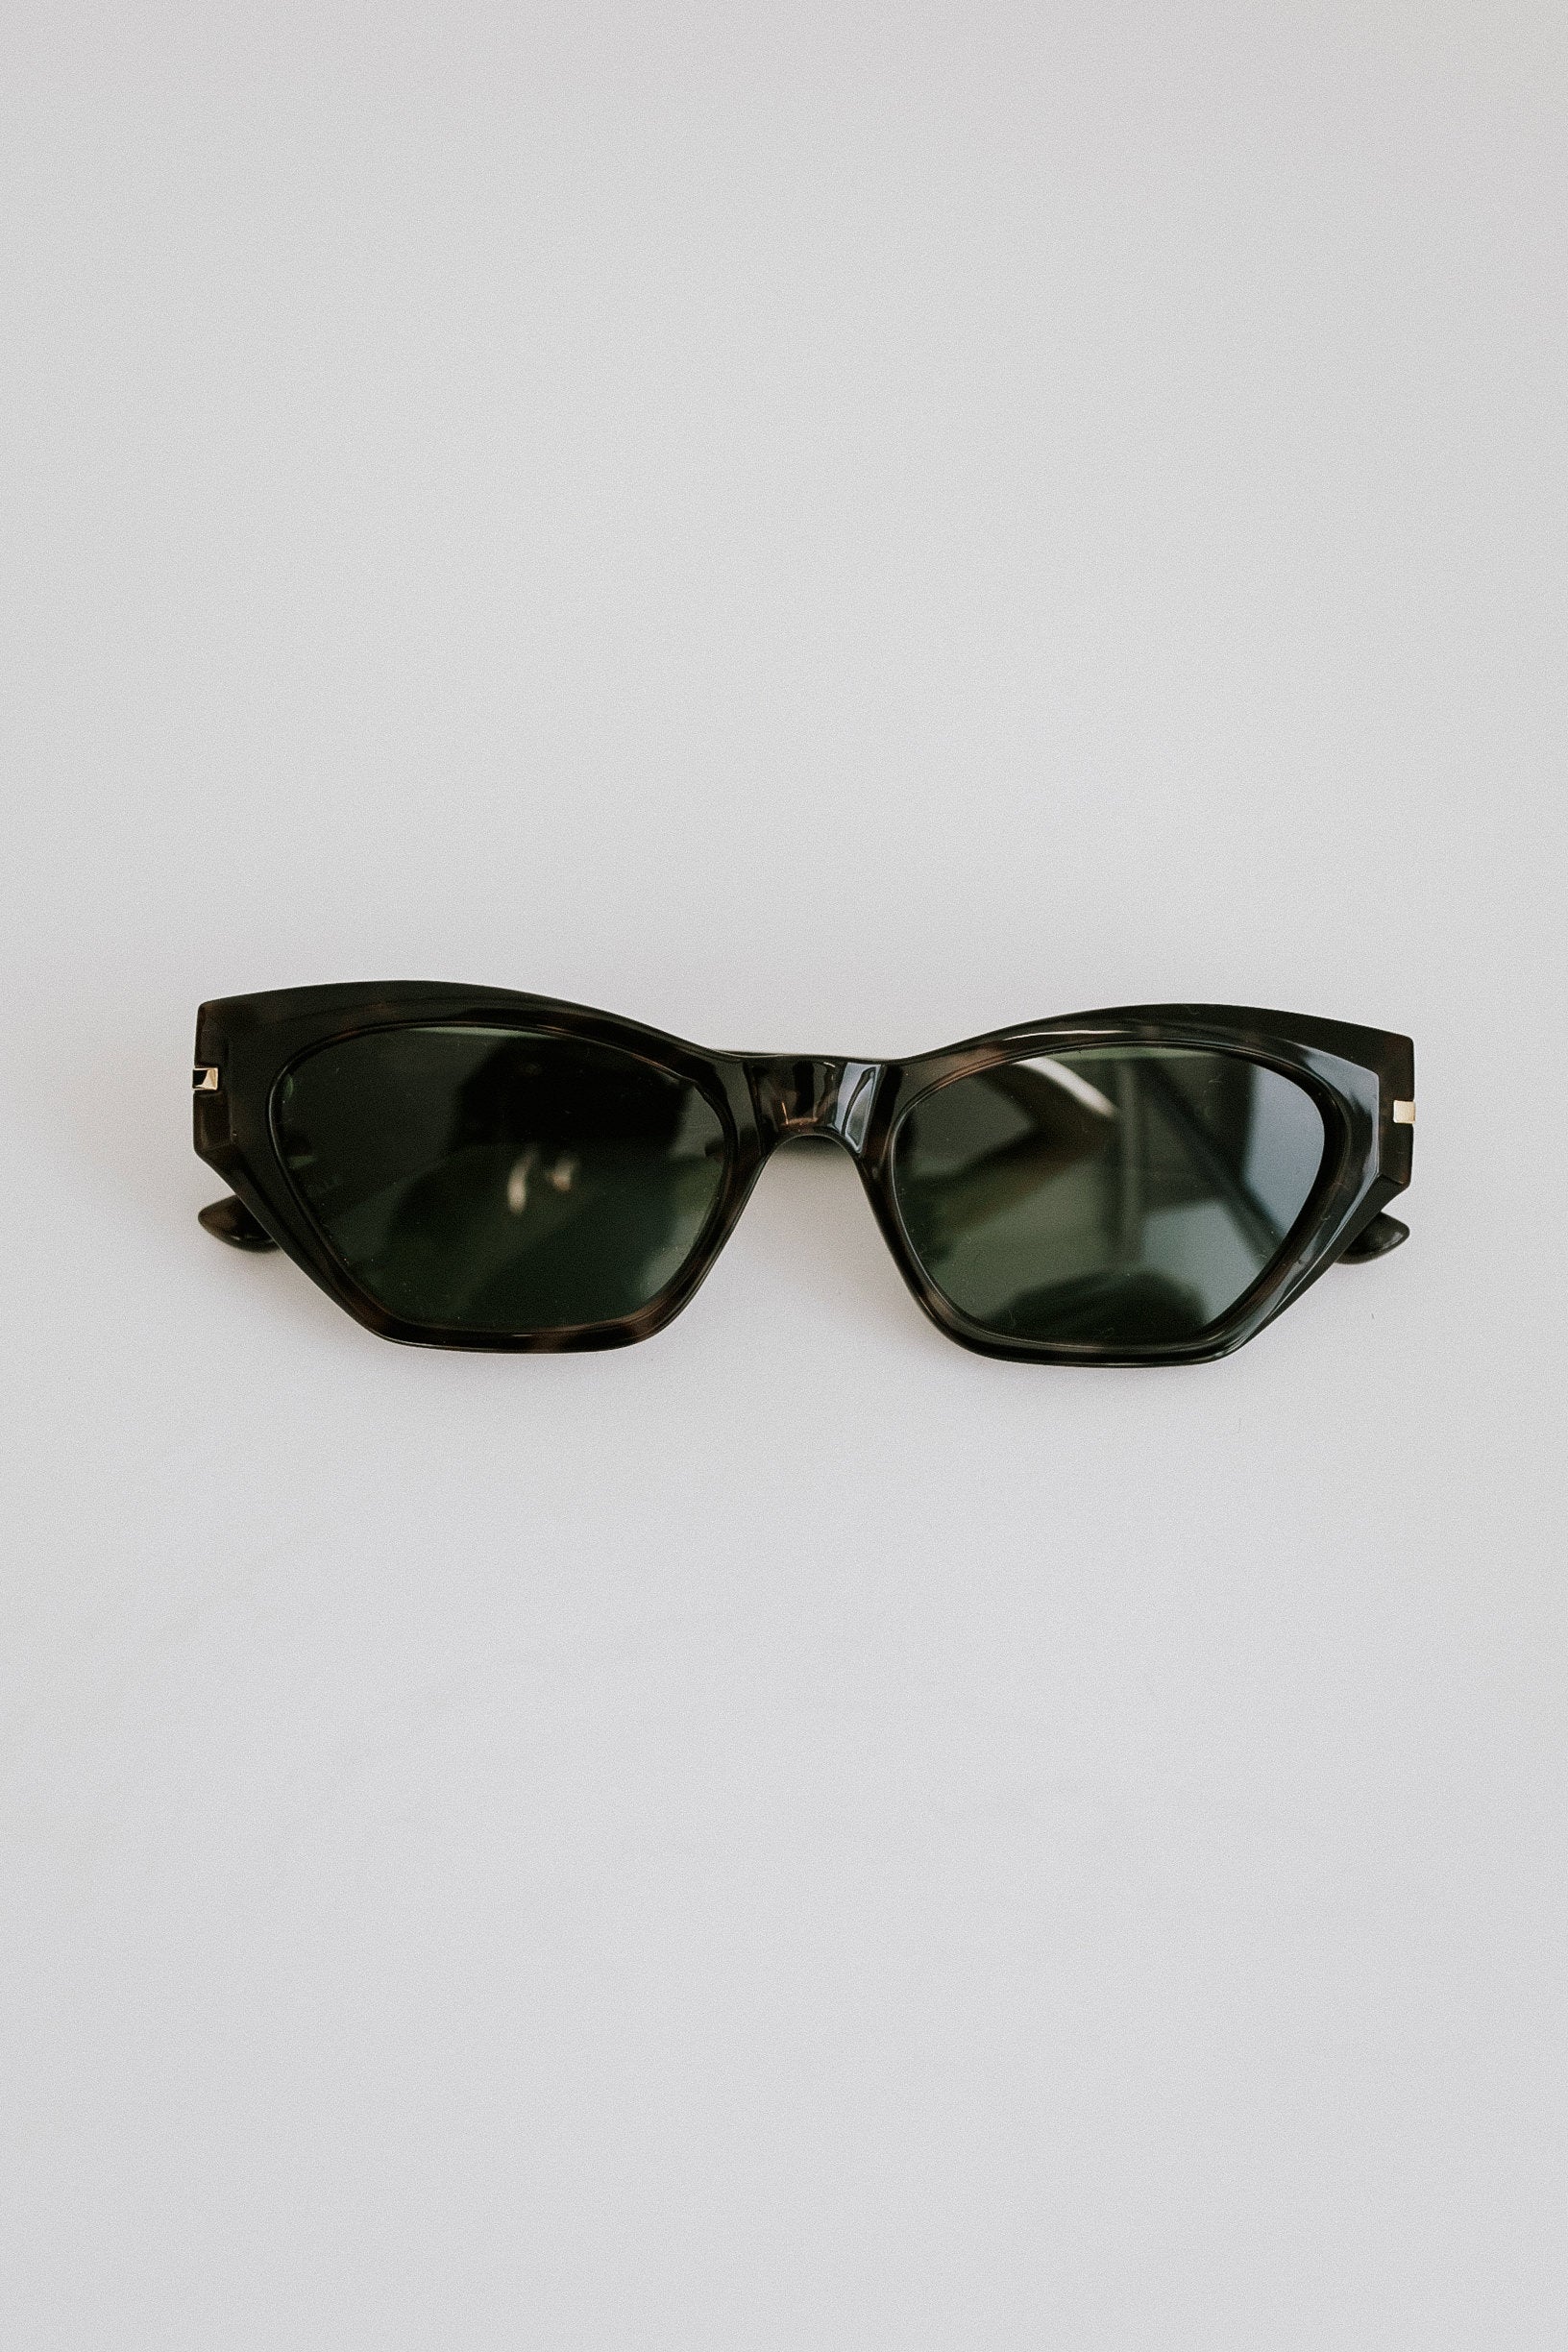 Next Level Sunglasses - Tortoise